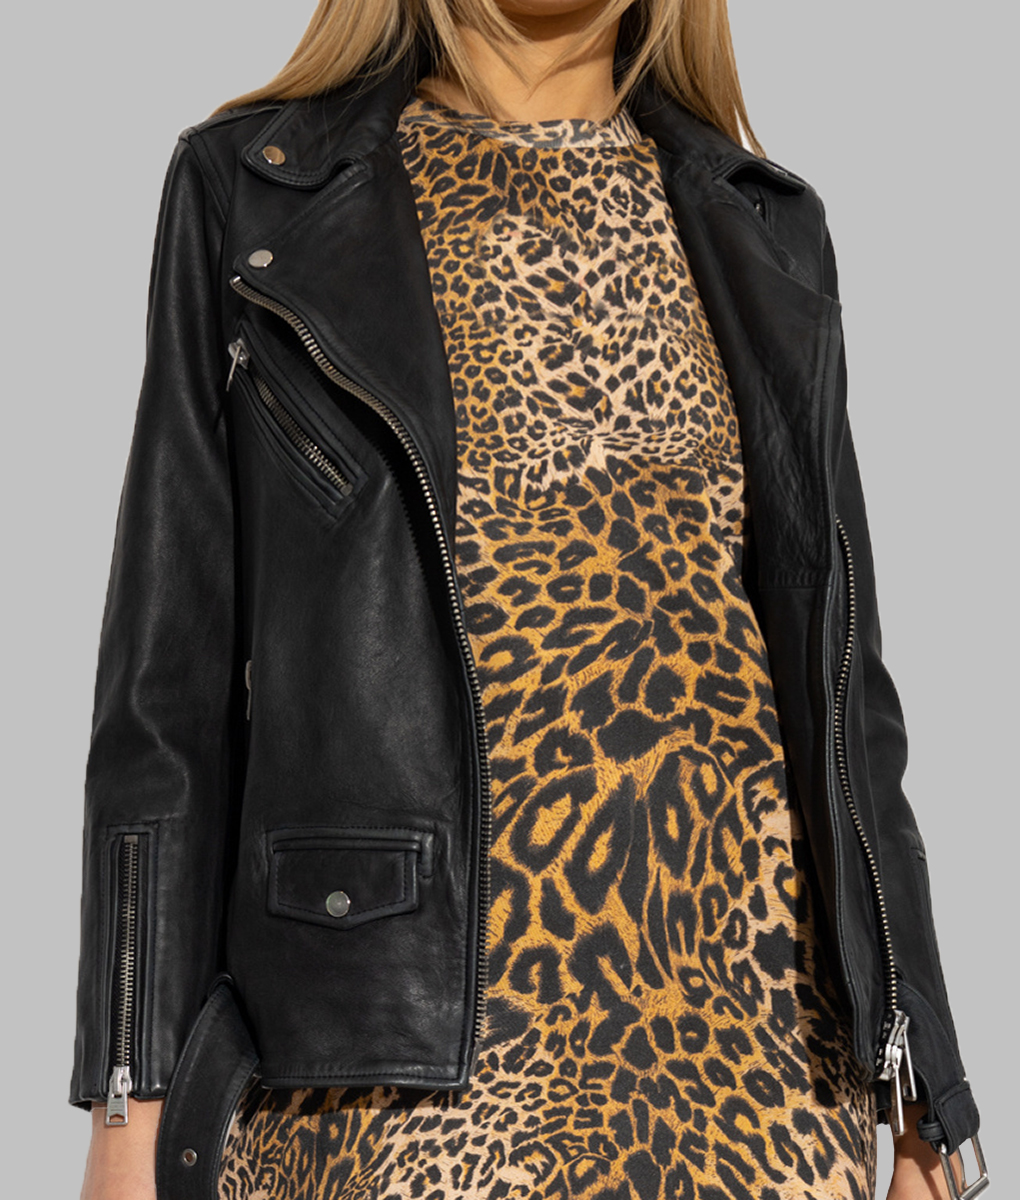 Lydia West Big Mood Black Leather Jacket (4)